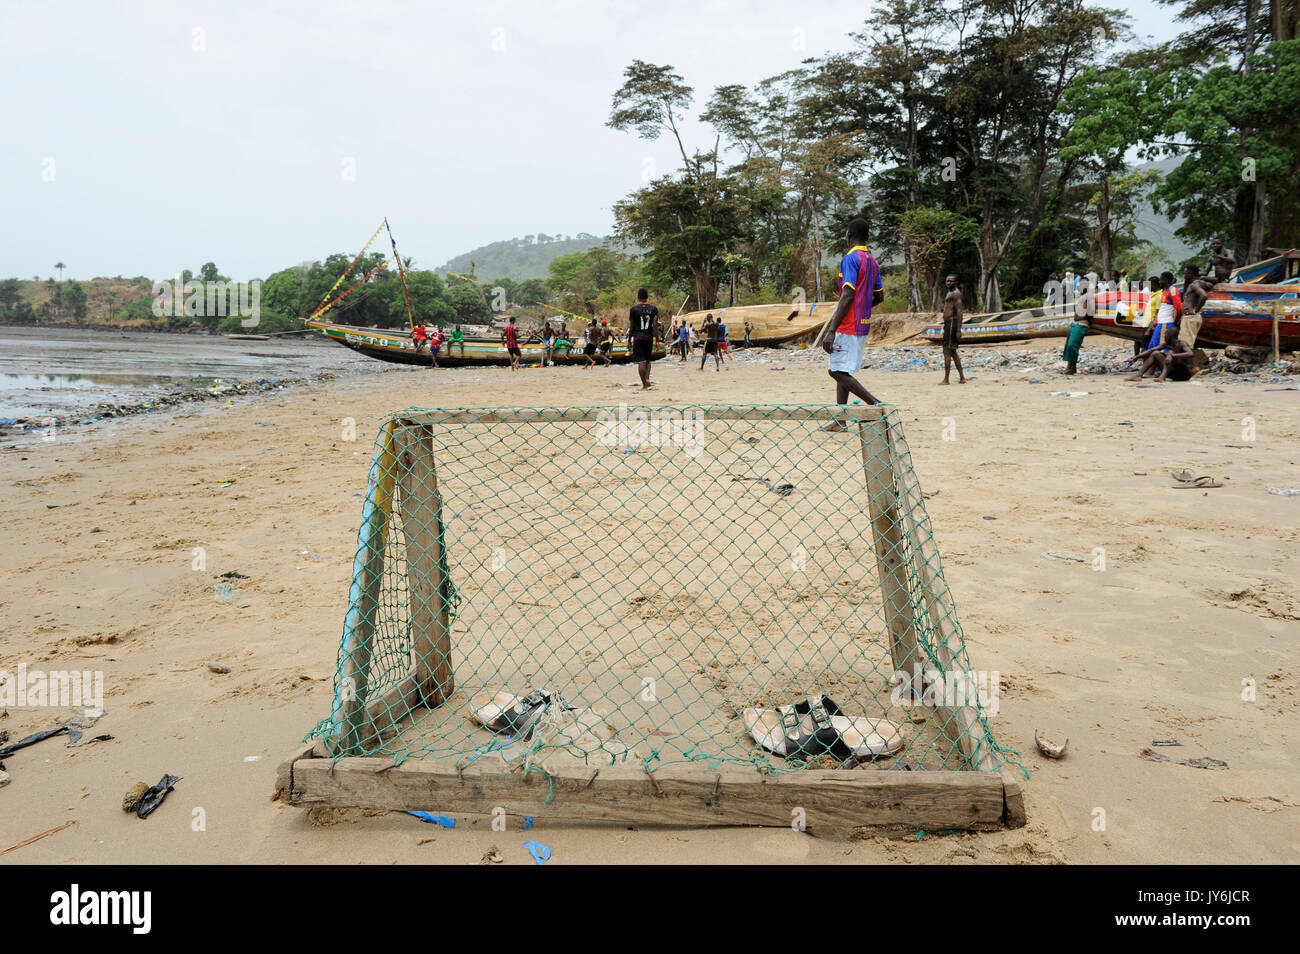 SIERRA LEONE, Tombo, Fischereihafen, die Ernährungssicherheit und die livelyhood der kleinen Fischer, die von der Internationalen große Trawler Flotte betroffen sind, Fußballtor vom Fischen net Stockfoto